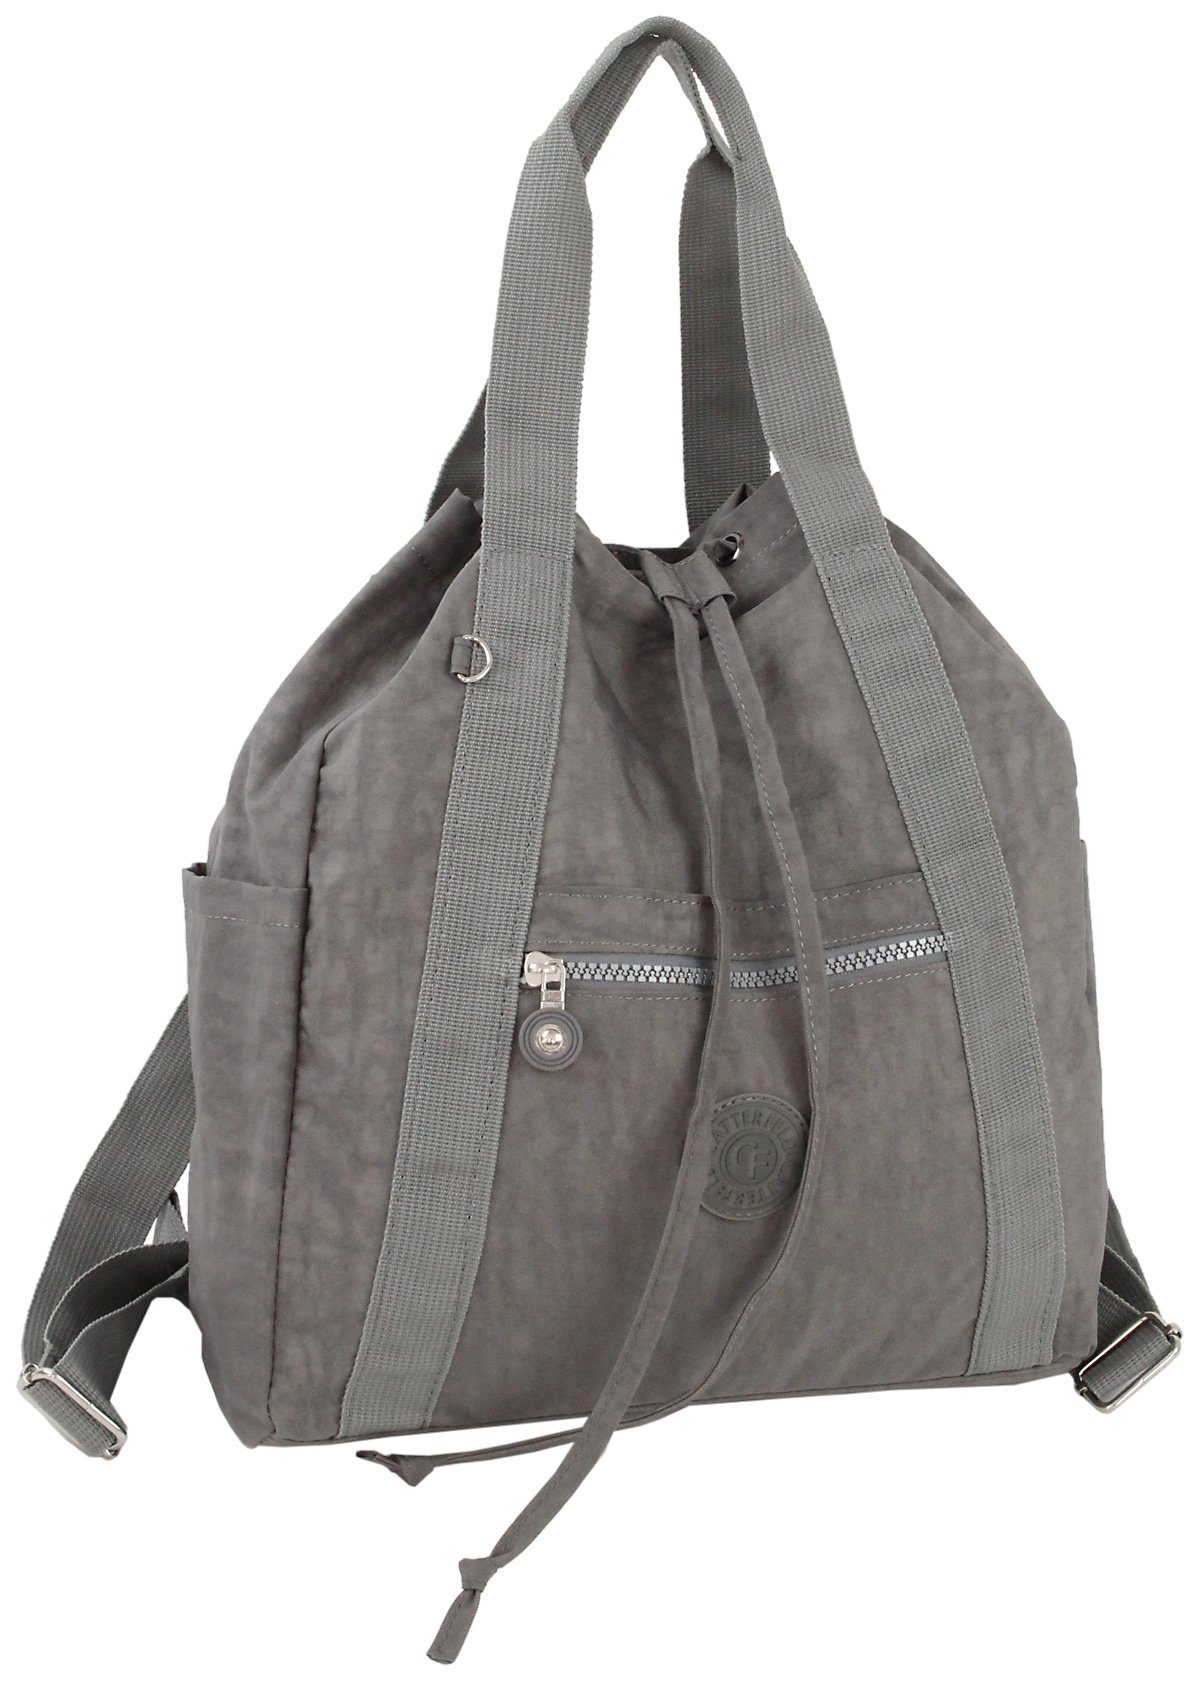 CF CATTERFELD Cityrucksack und Handtasche in Einem, 2in1 leichter Freizeitrucksack/Schultertasche, Leicht Grau